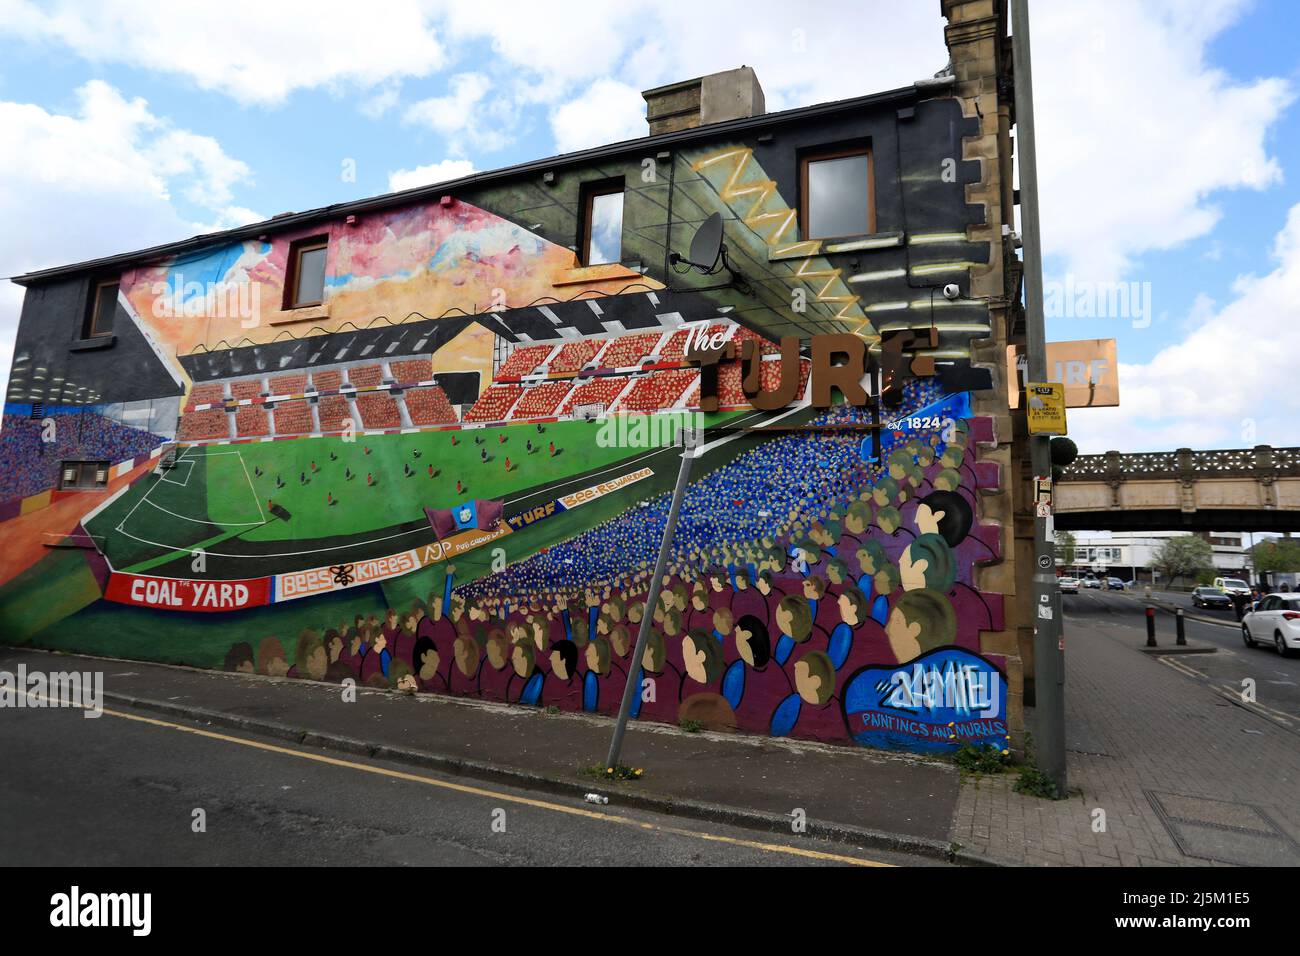 Burnley, Regno Unito. 24th Apr 2022. Una vista generale di un murale d'arte vicino allo stadio prima della partita della Premier League tra Burnley e Wolverhampton Wanderers al Turf Moor il 24th 2022 aprile a Burnley, Inghilterra. (Foto di Tony Taylor/phcimages.com) Credit: PHC Images/Alamy Live News Foto Stock